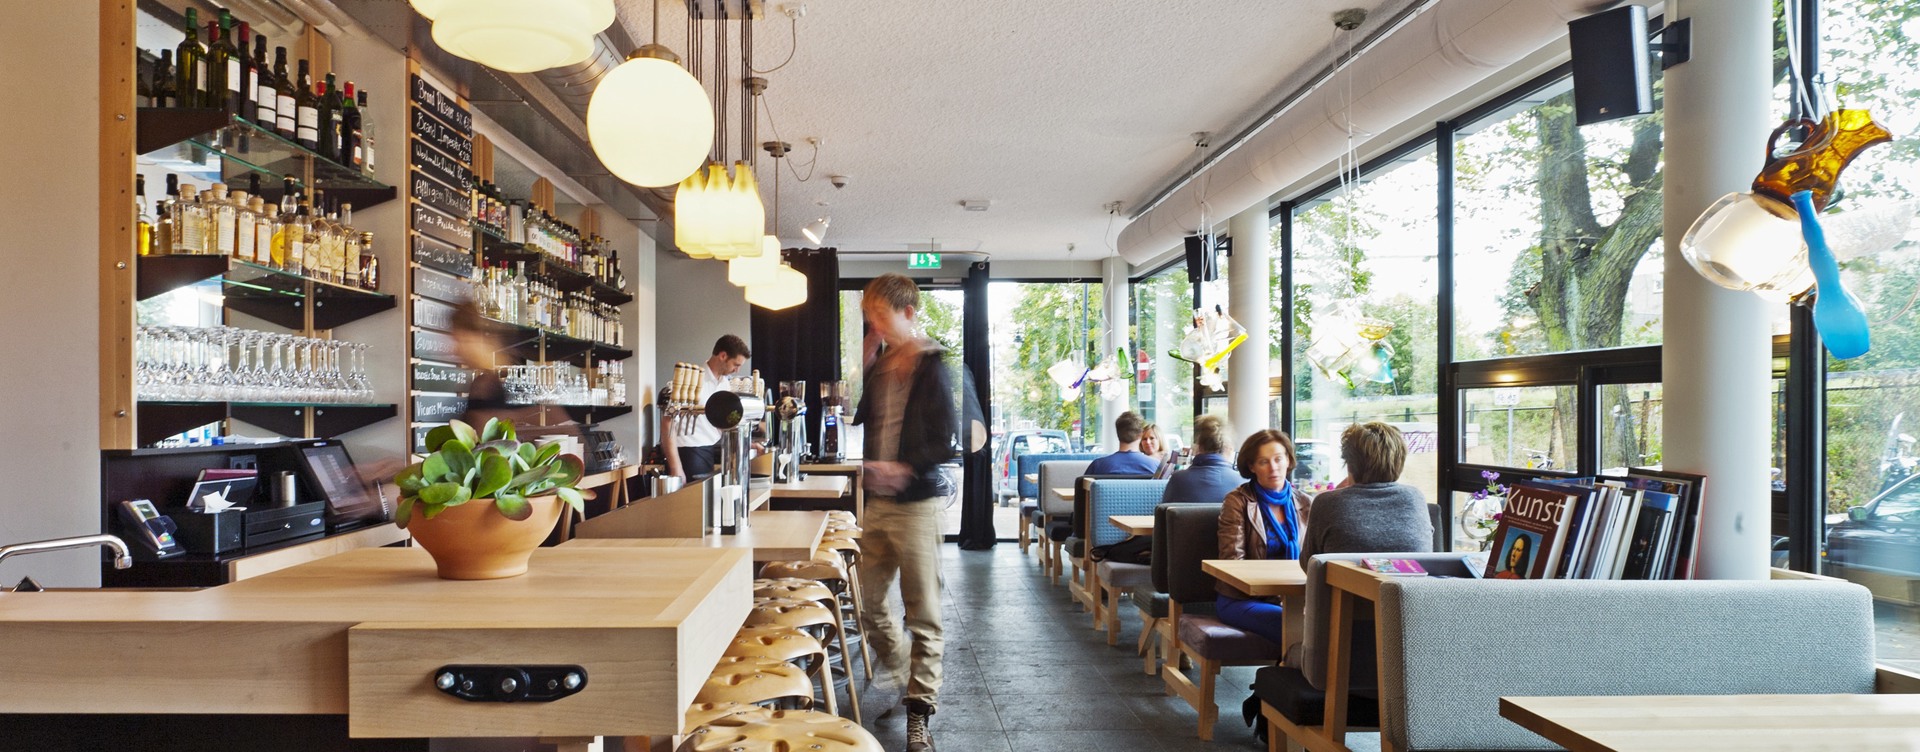 Café Caspar:
das moderne Wohnzimmer von Arnheim